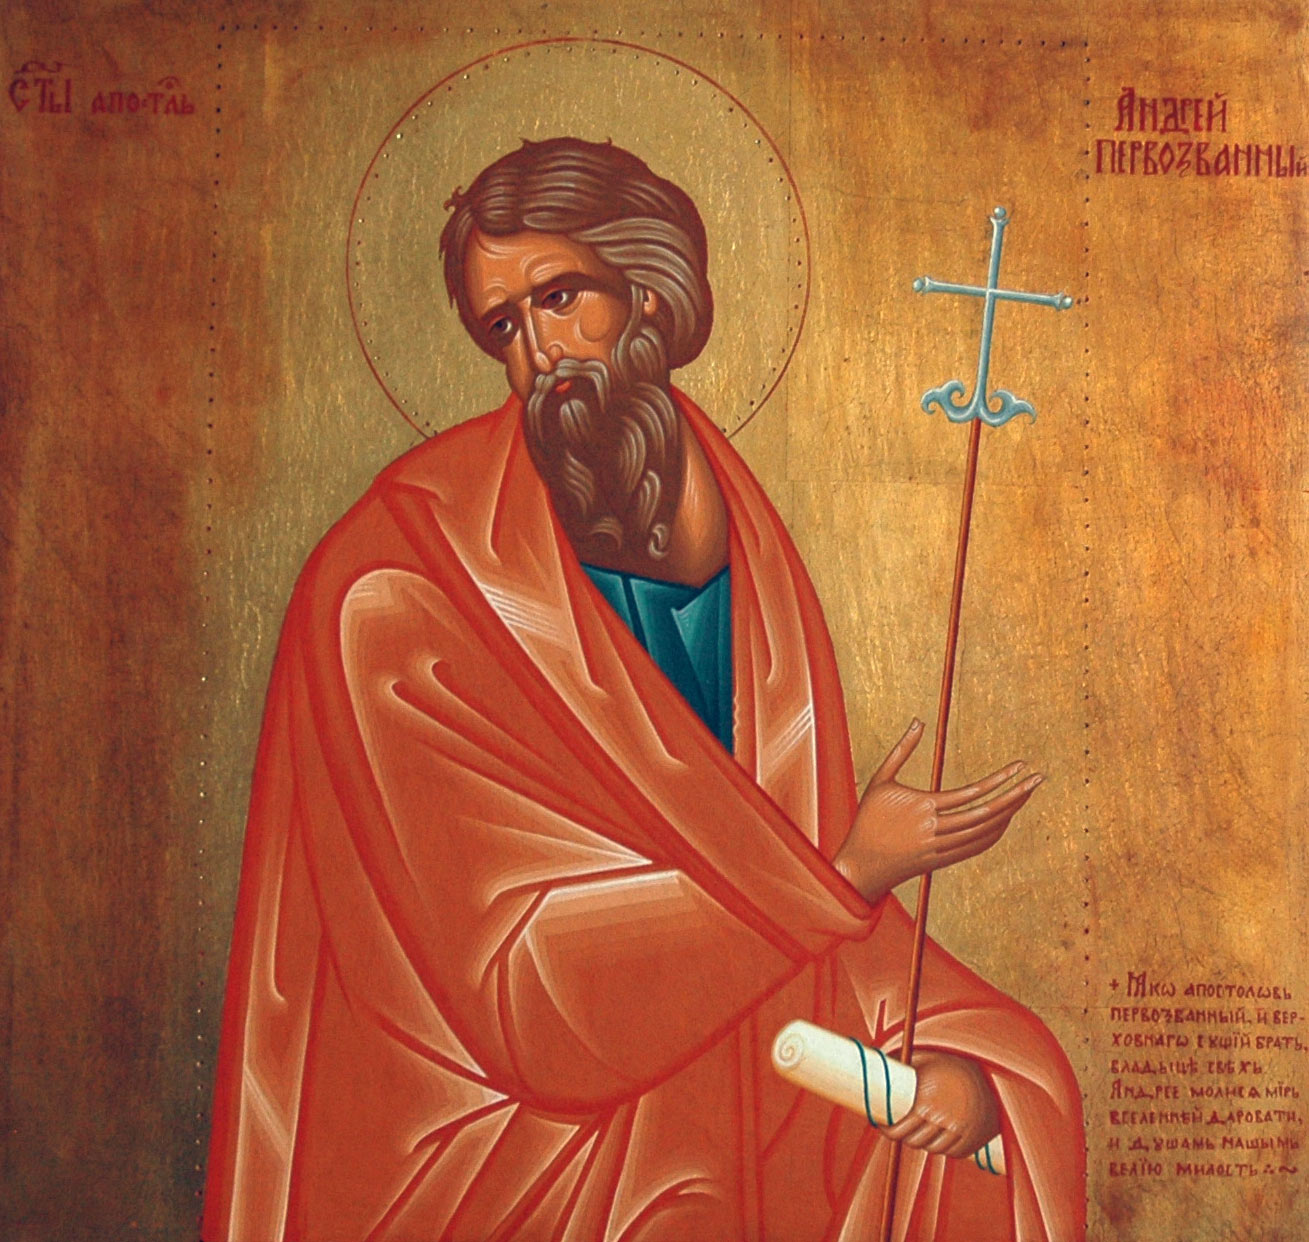 Андрей Первозванный – по преимуществу, русский апостол